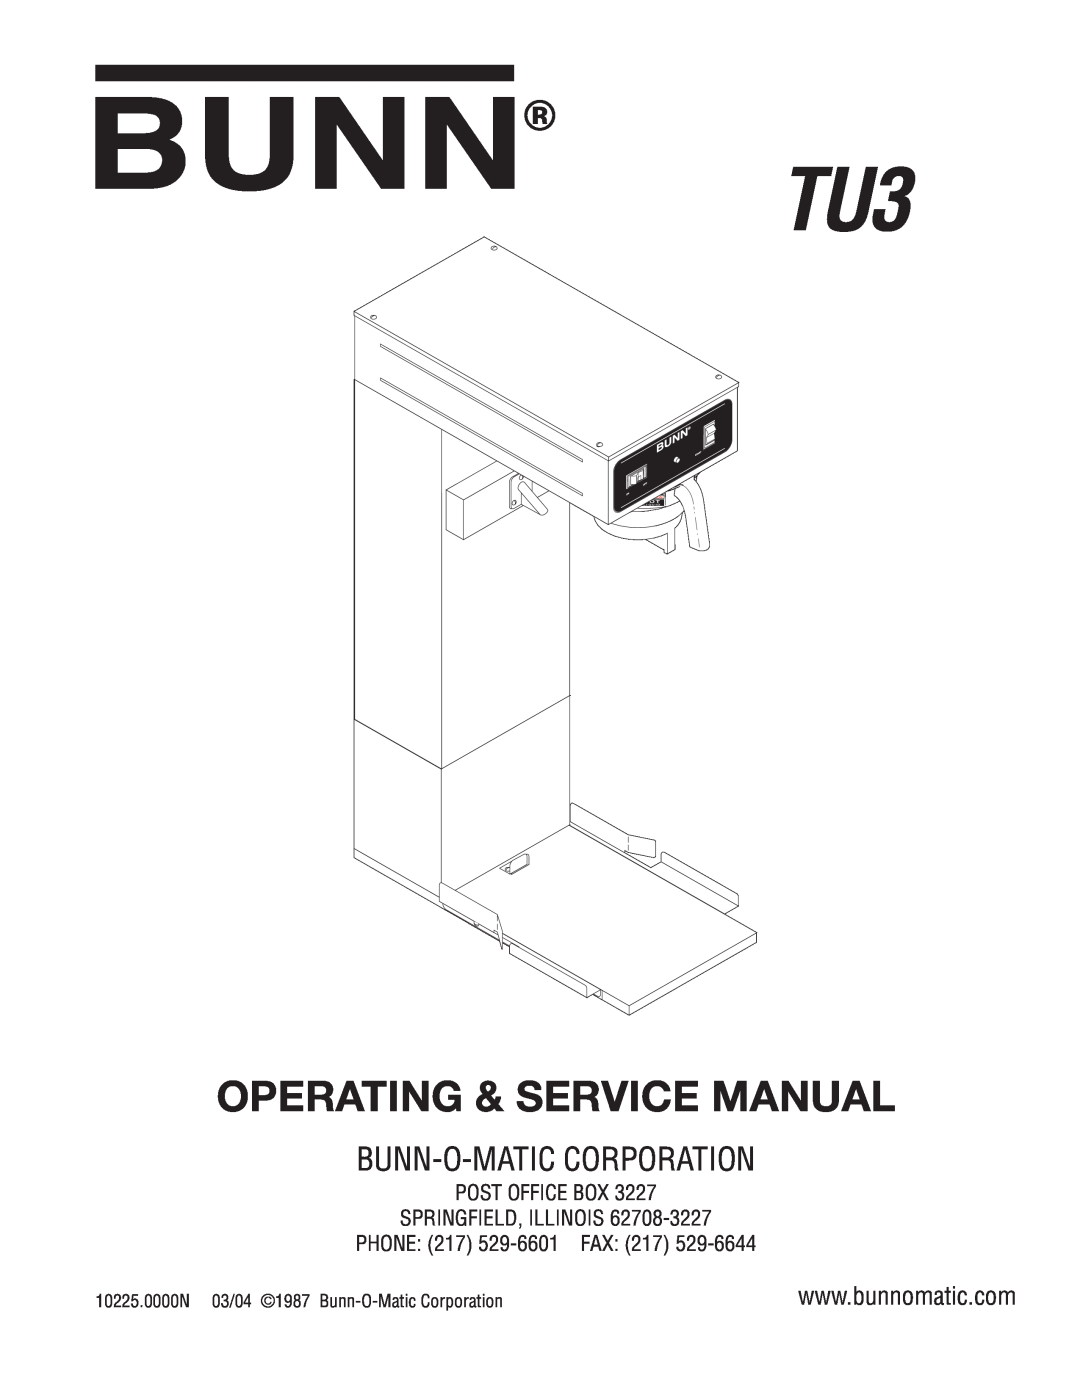 Bunn TU3 service manual Bunn-O-Maticcorporation, 10225.0000N 03/04 1987 Bunn-O-MaticCorporation, L I Q U I D 